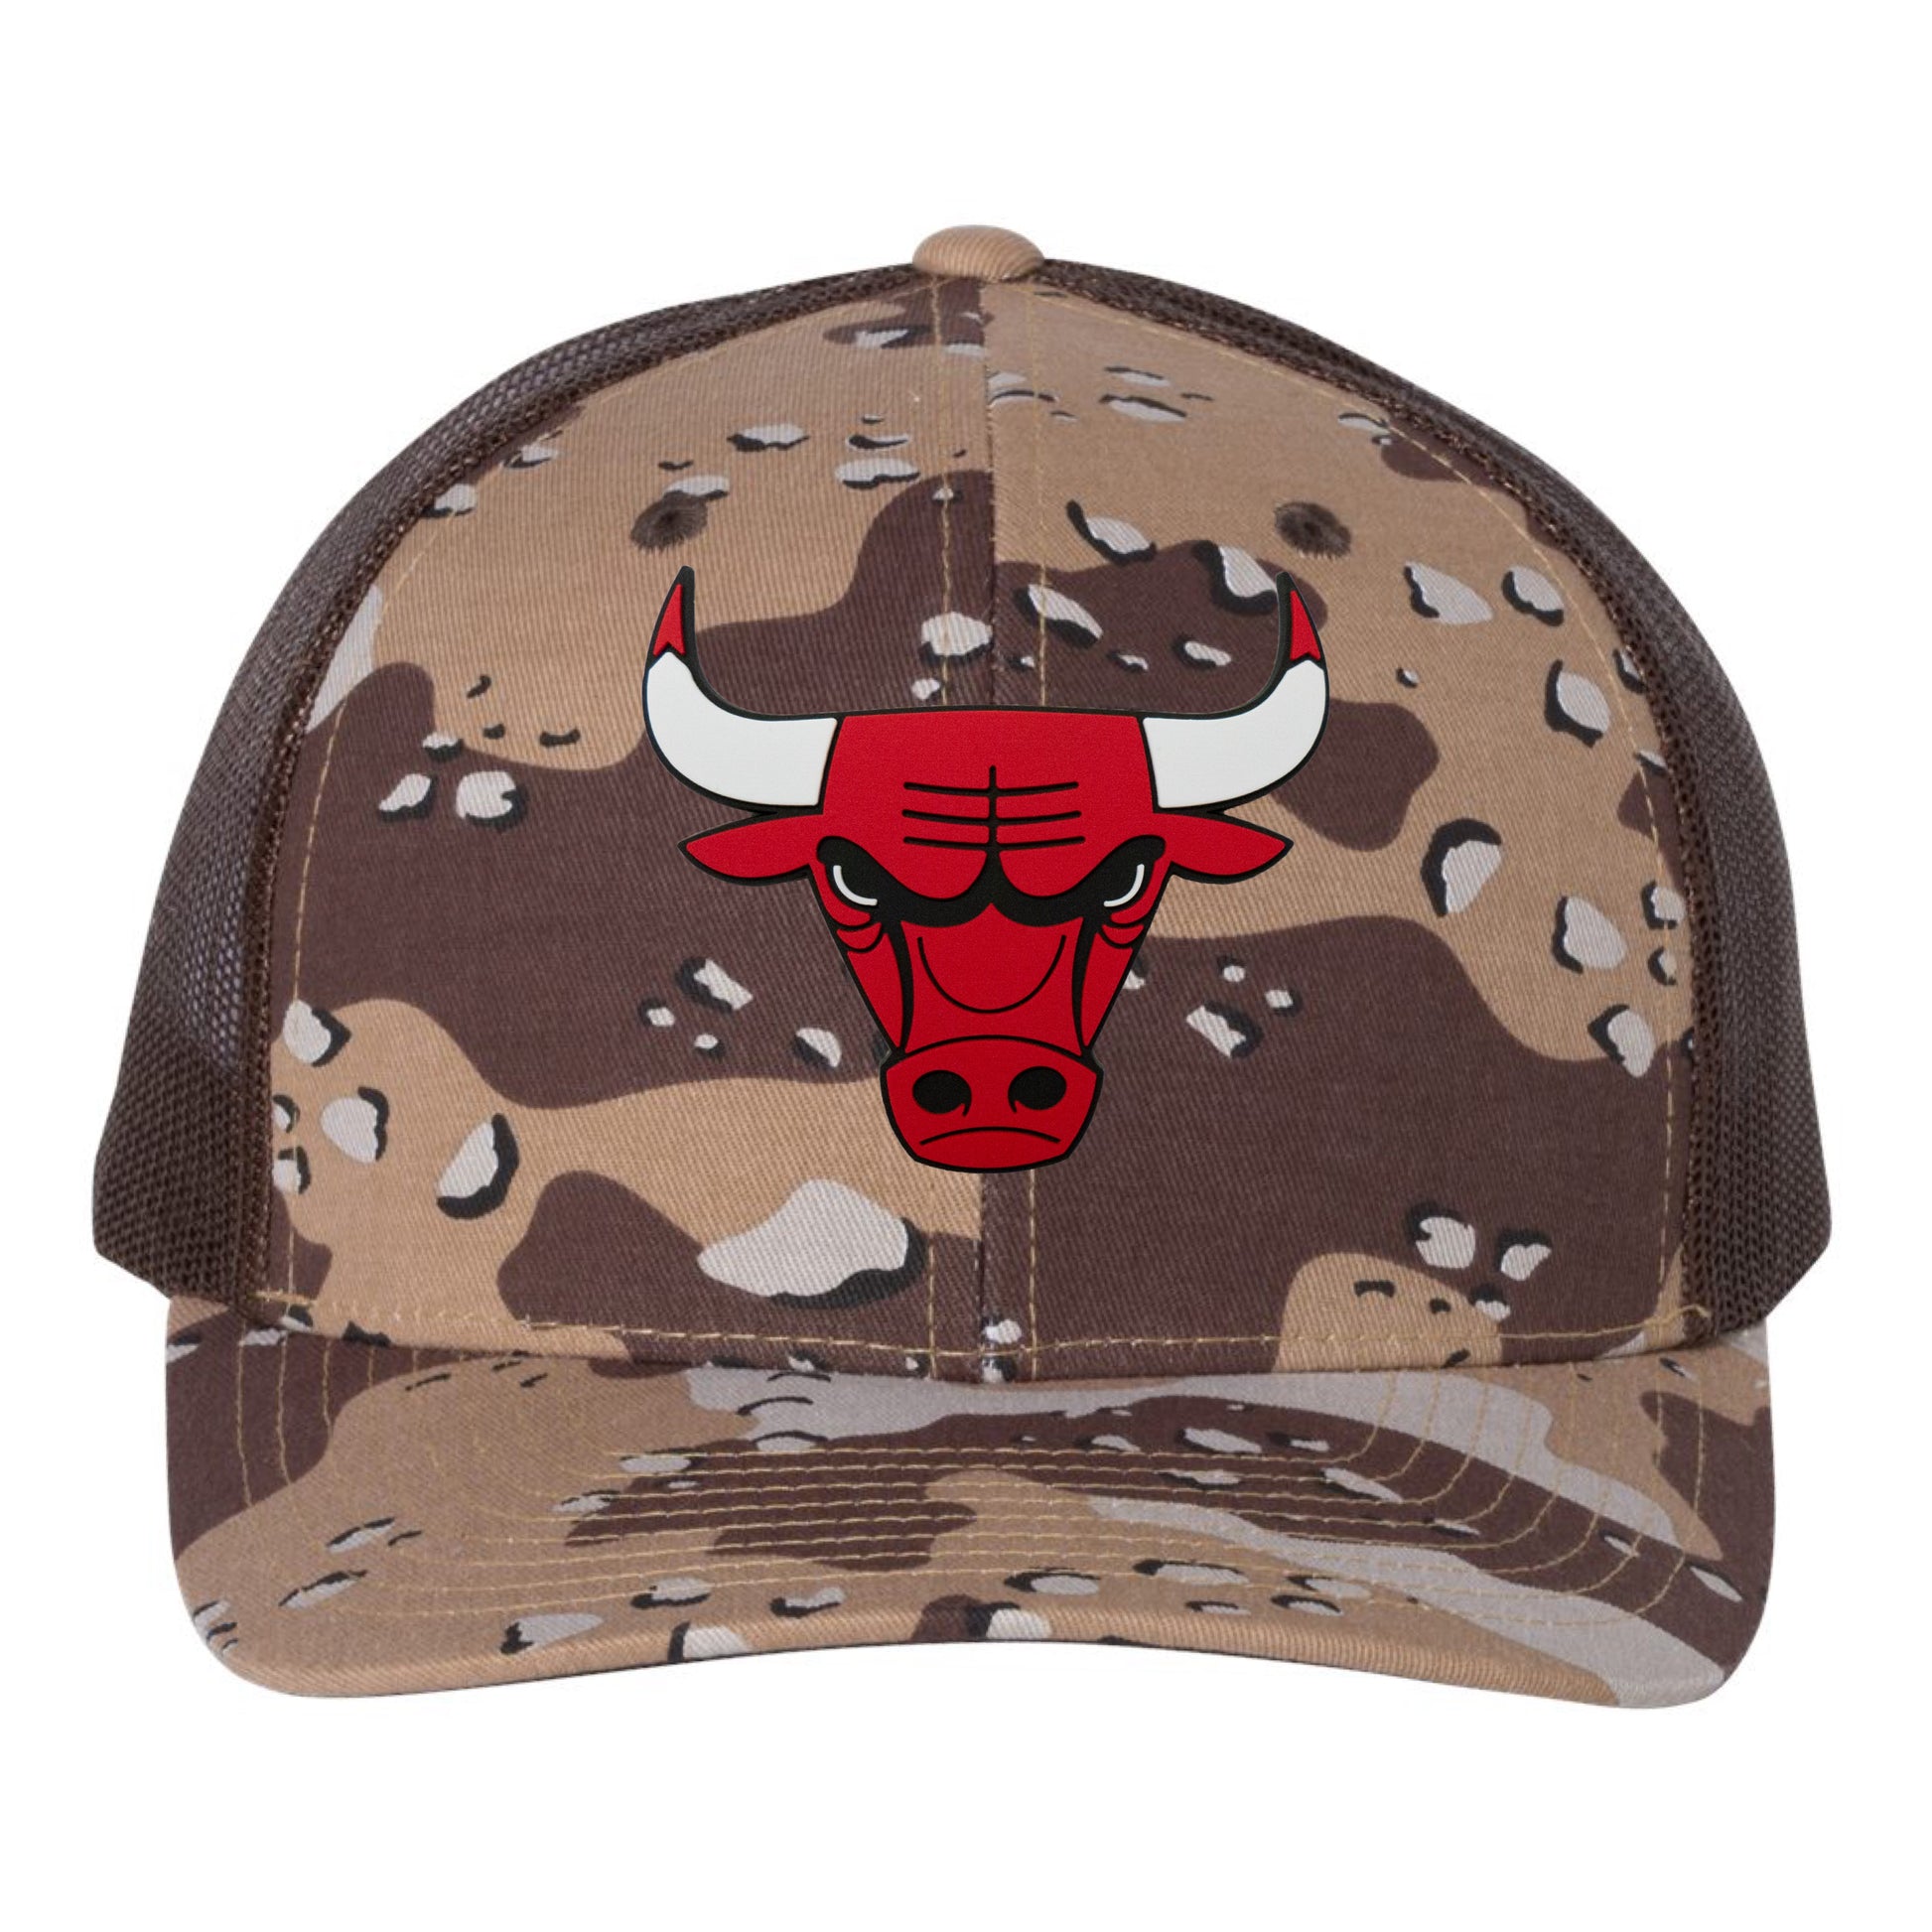 Chicago Bulls 3D Patterned Snapback Trucker Hat- Desert Camo